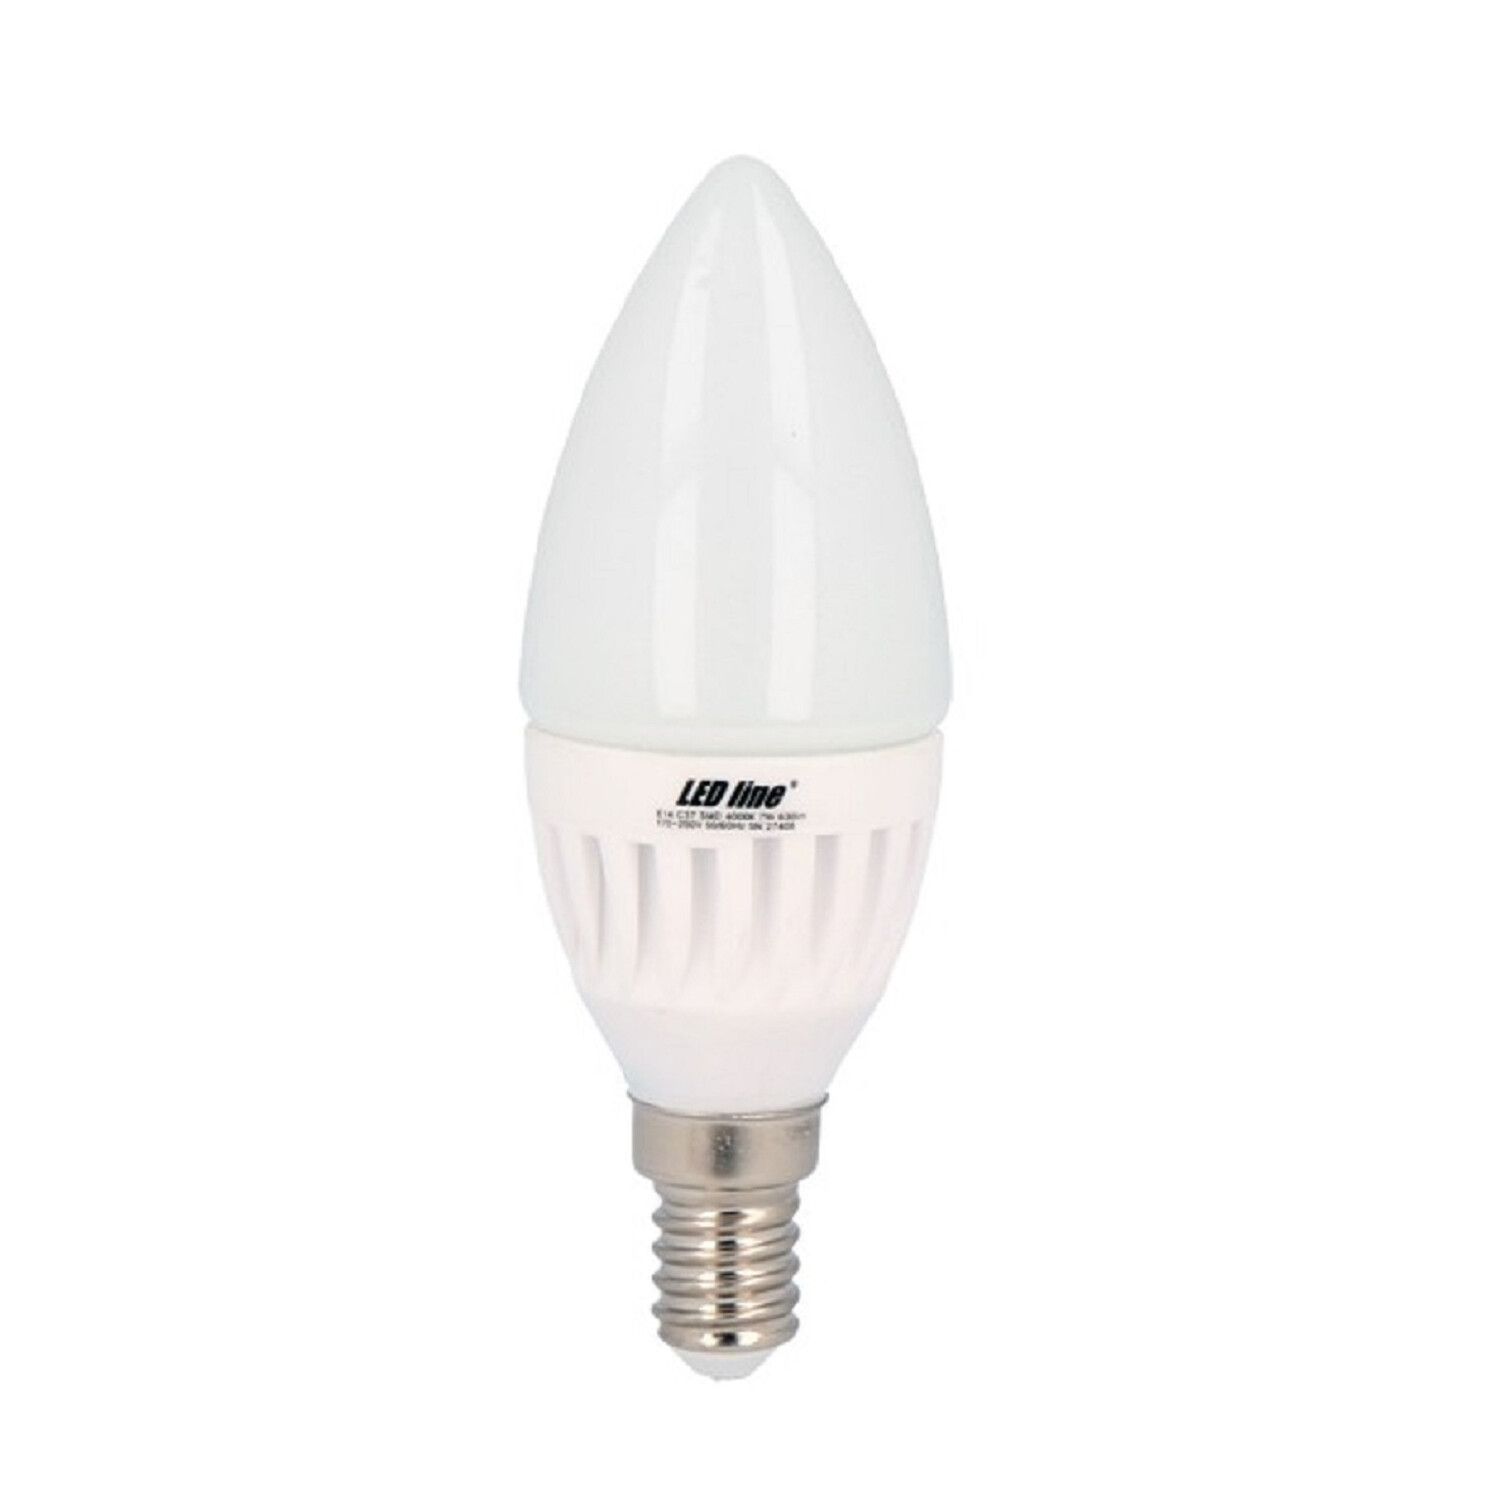 LED LINE 3x Leuchtmittel LED 630lm Warmweiß E14 220° 7W C37 LED